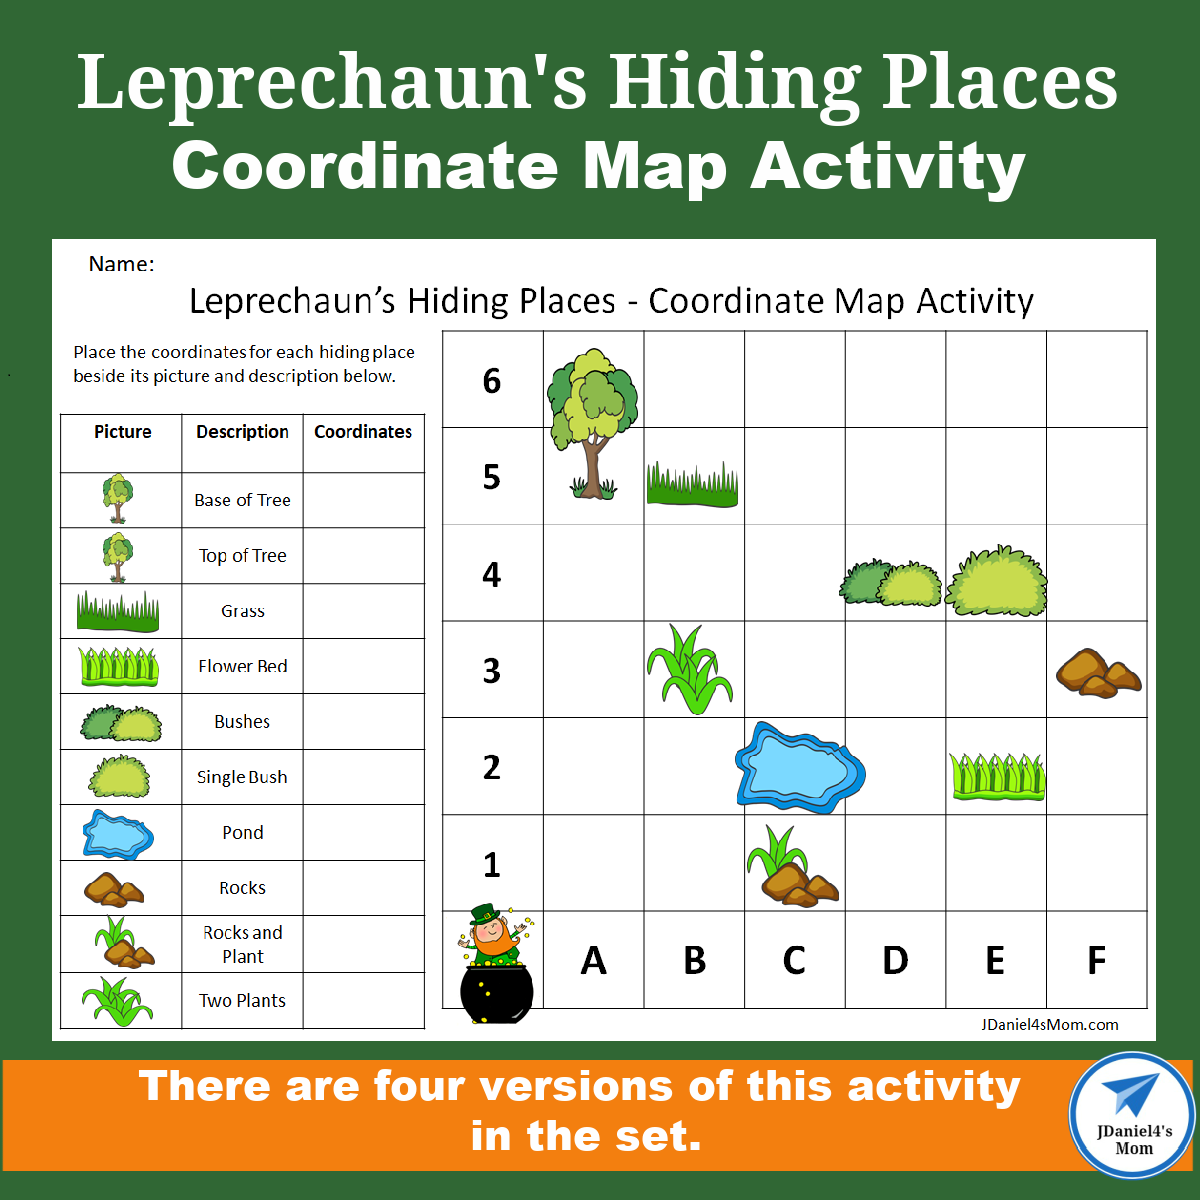 Leprechaun's Hiding Places - Coordinate Map Activity Set